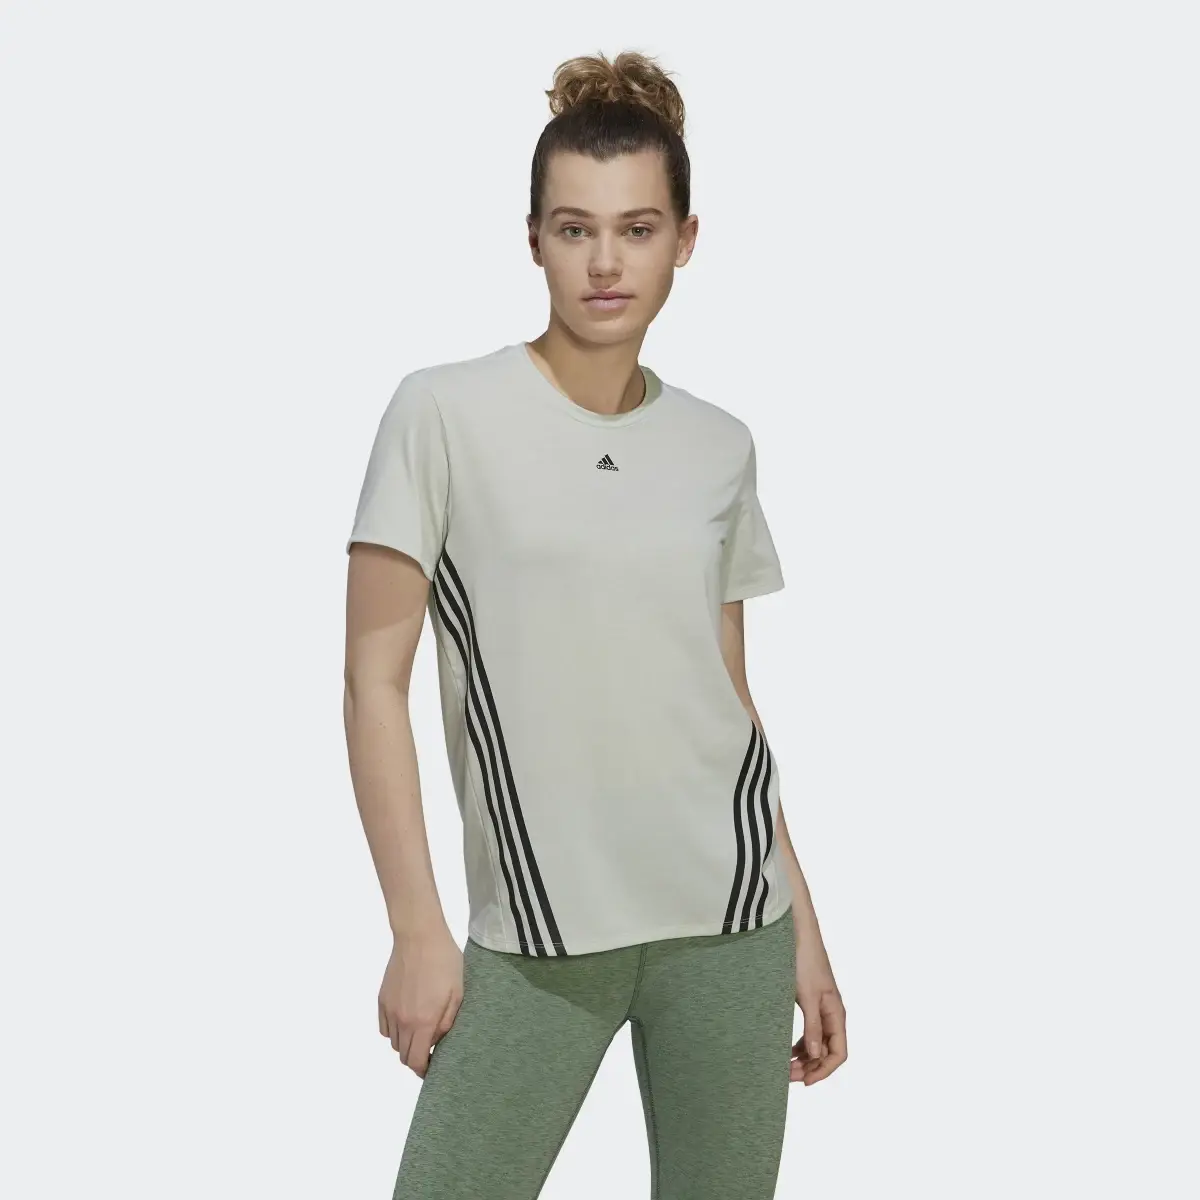 Adidas T-shirt 3-Stripes Trainicons. 2